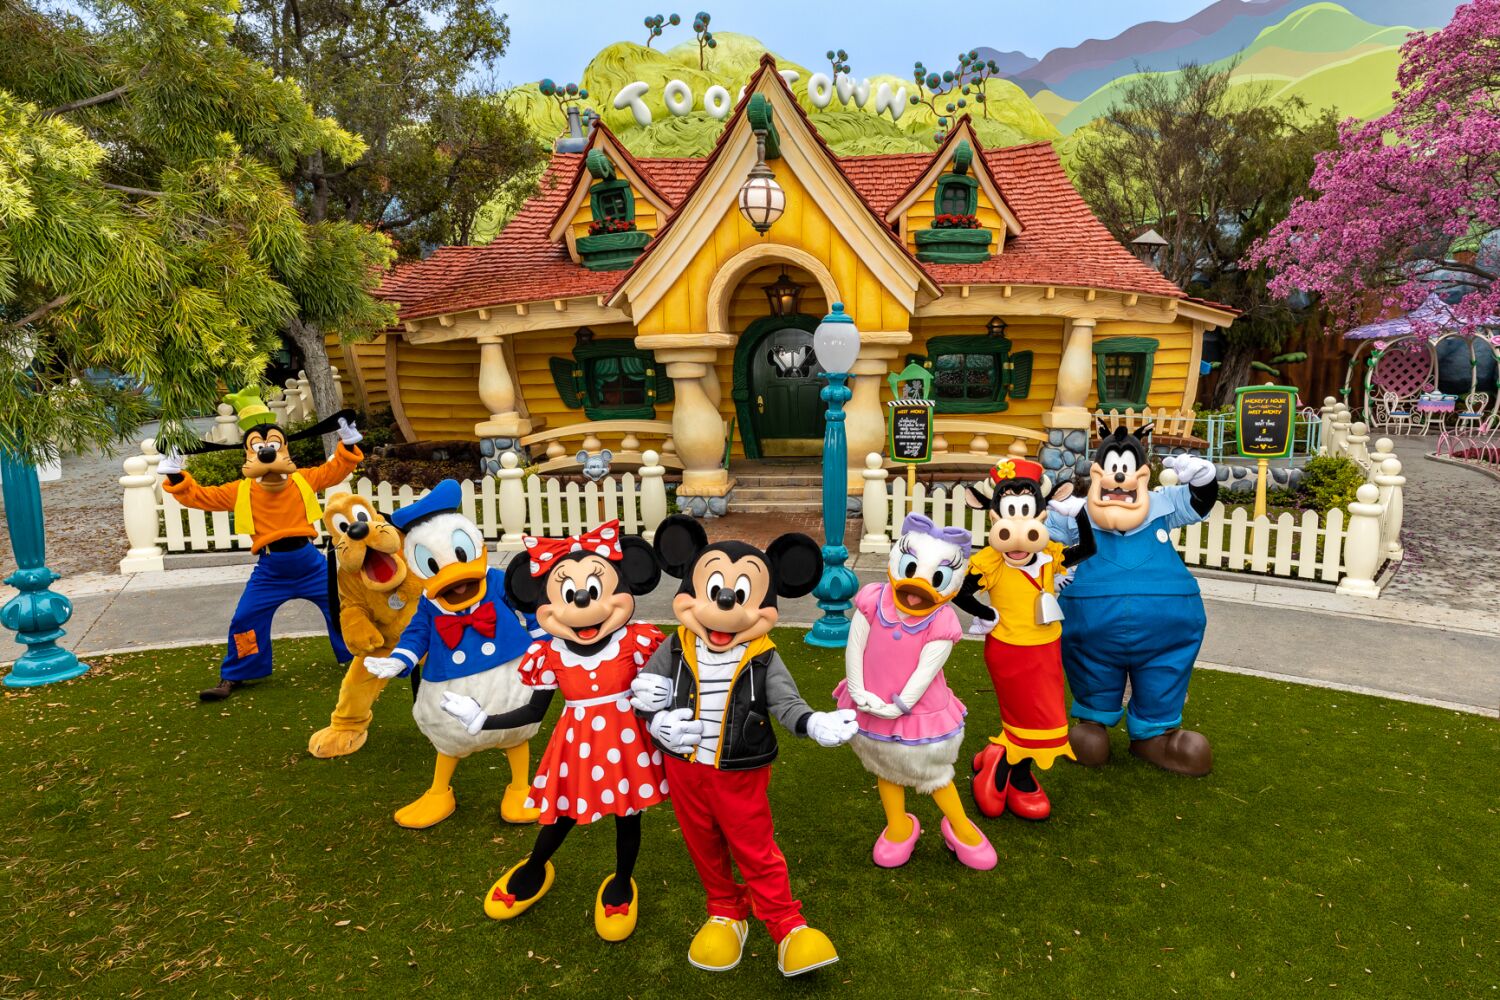 Mickey's Toontown recobra vida tras ser reimaginado en el parque de atracciones Disneyland Resort